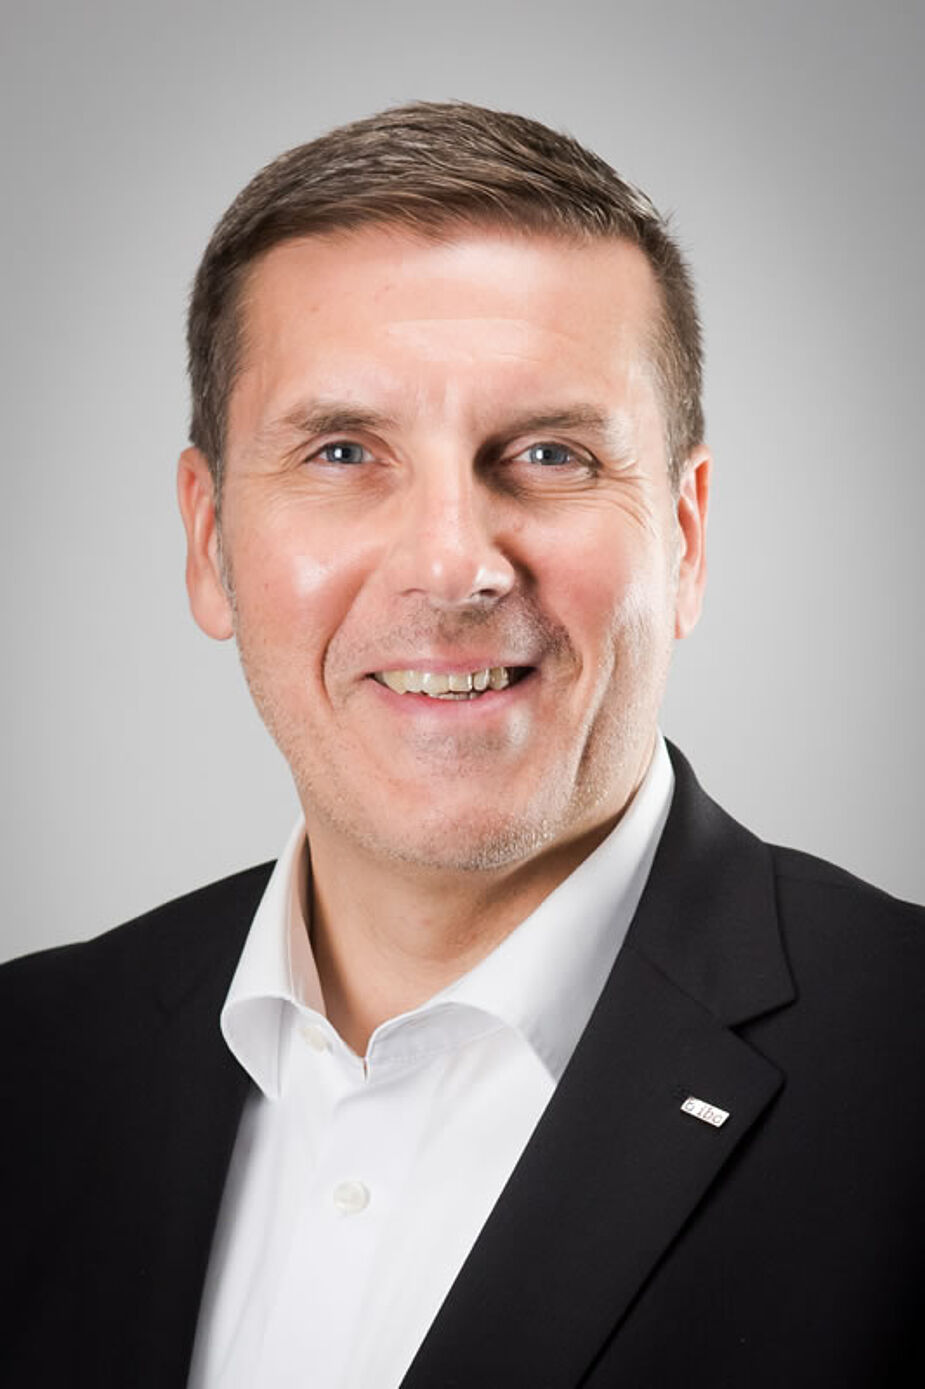 Dirk Kalbfleisch